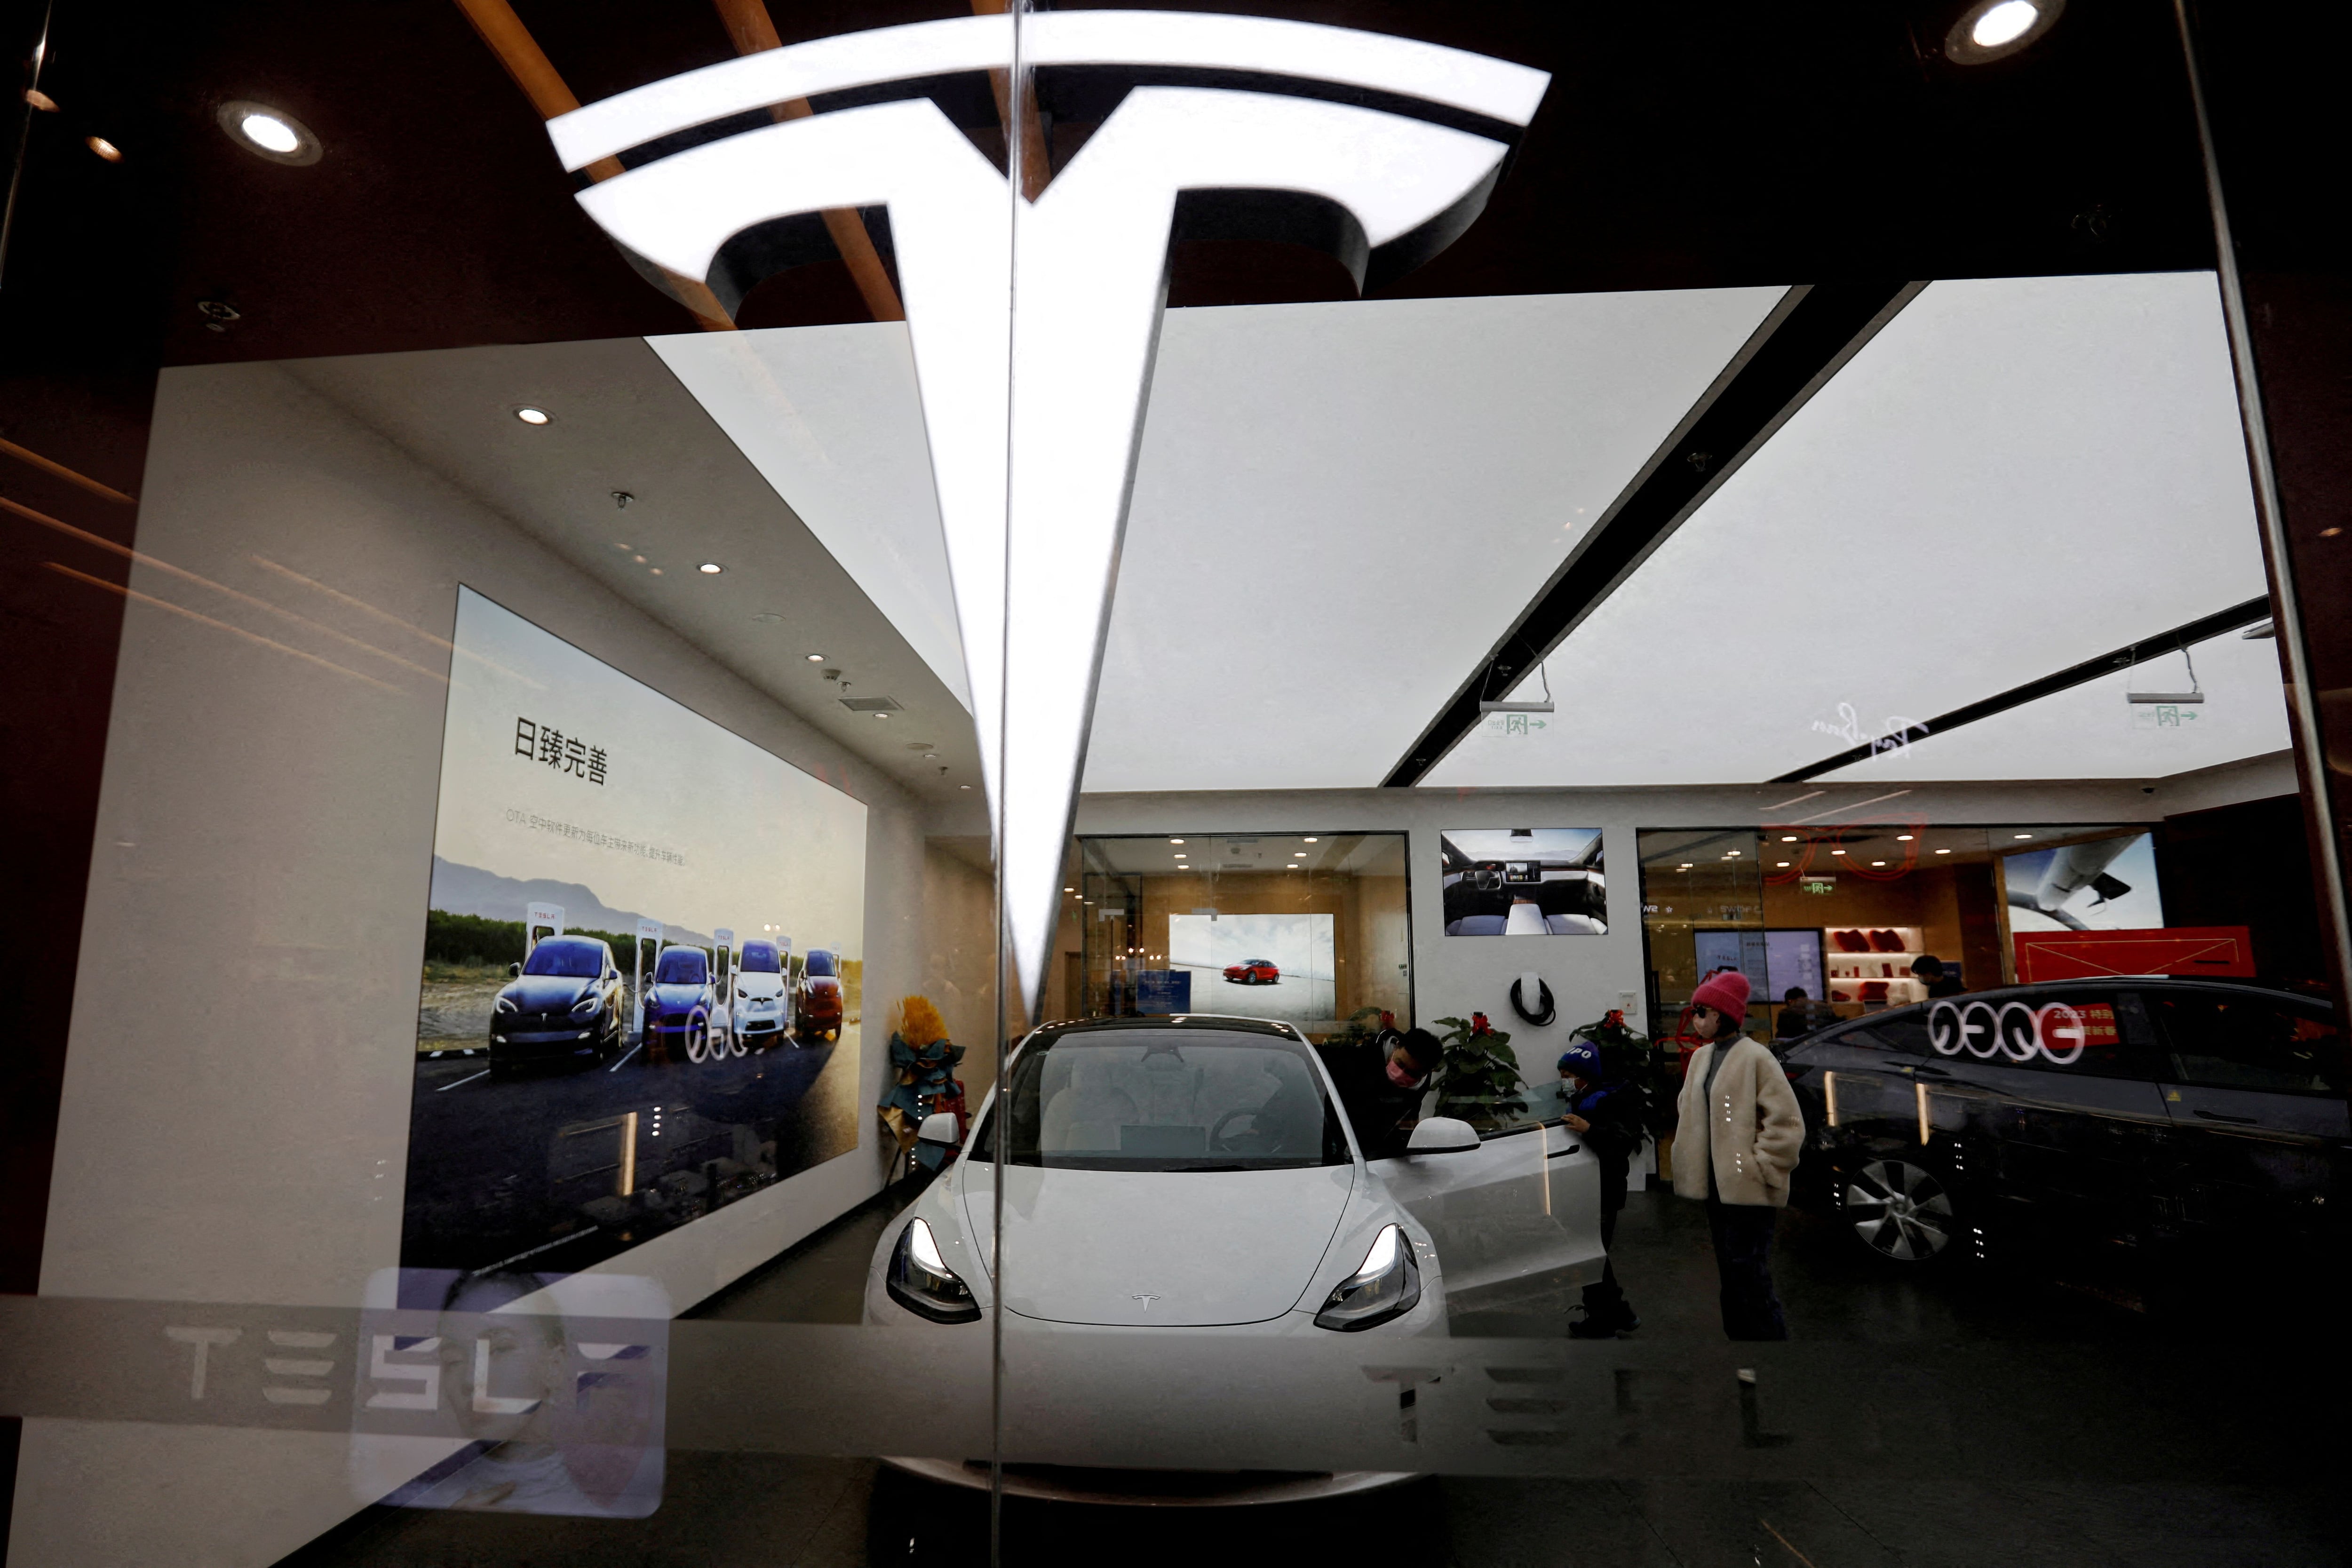 Este anuncio de Tesla marca un paso más hacia la consolidación de la visión de Musk en cuanto a la movilidad autónoma y la transformación del transporte urbano. (REUTERS/Florence Lo)